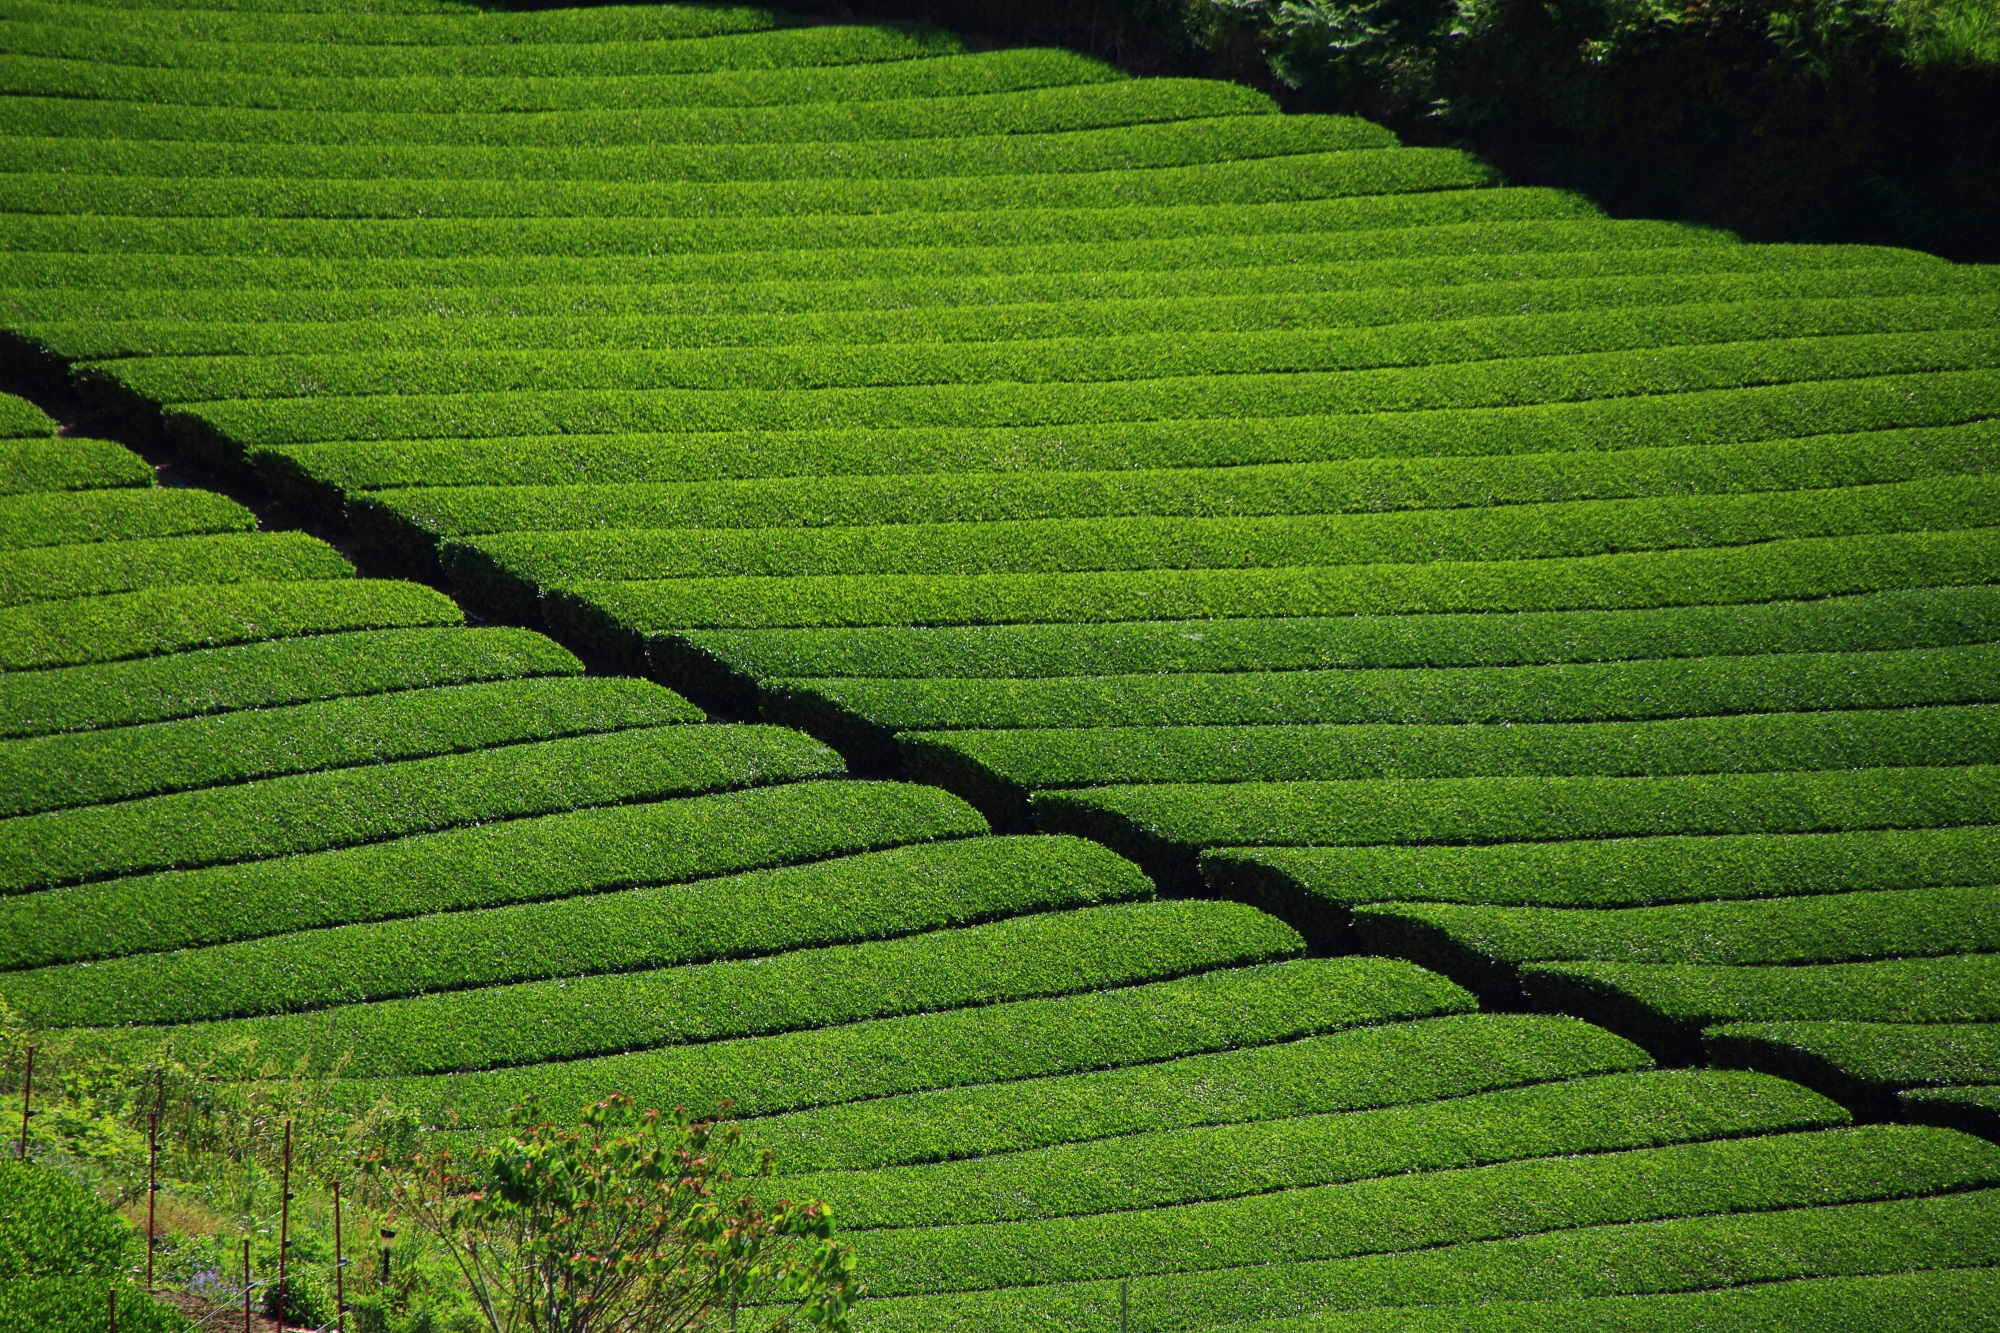 美しいお茶畑の景観から「茶源郷」とも称される納得の和束町